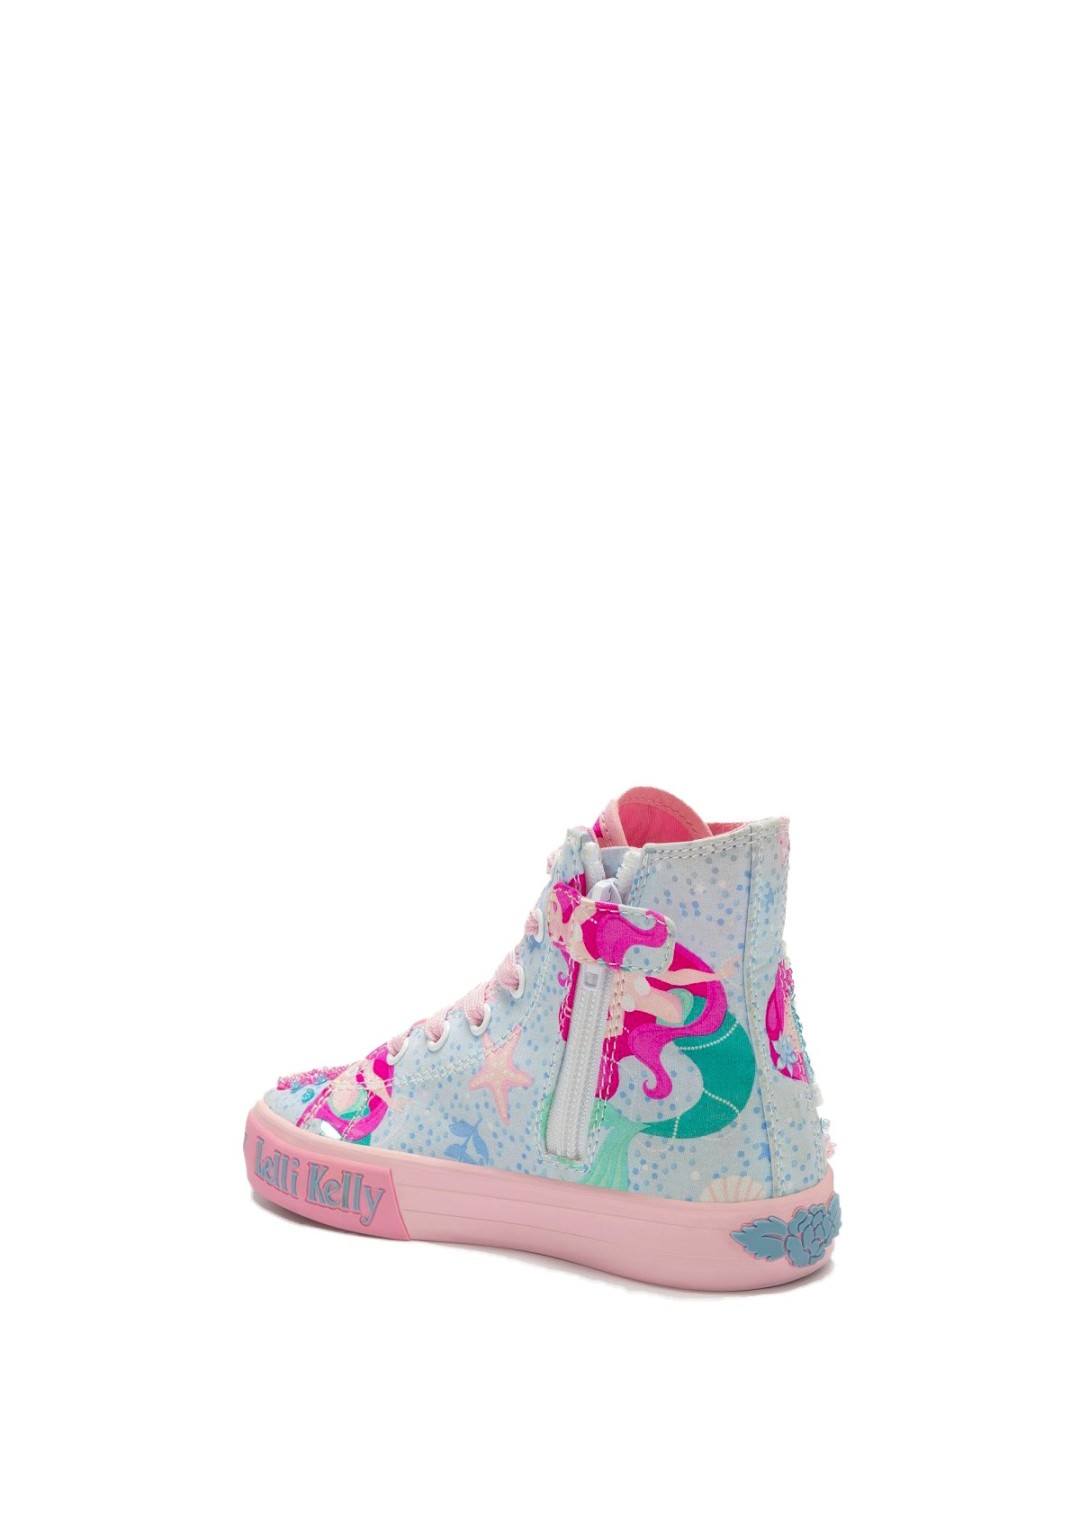 Lelli Kelly - Sneaker Sirena - Bambine e ragazze - LKED3489